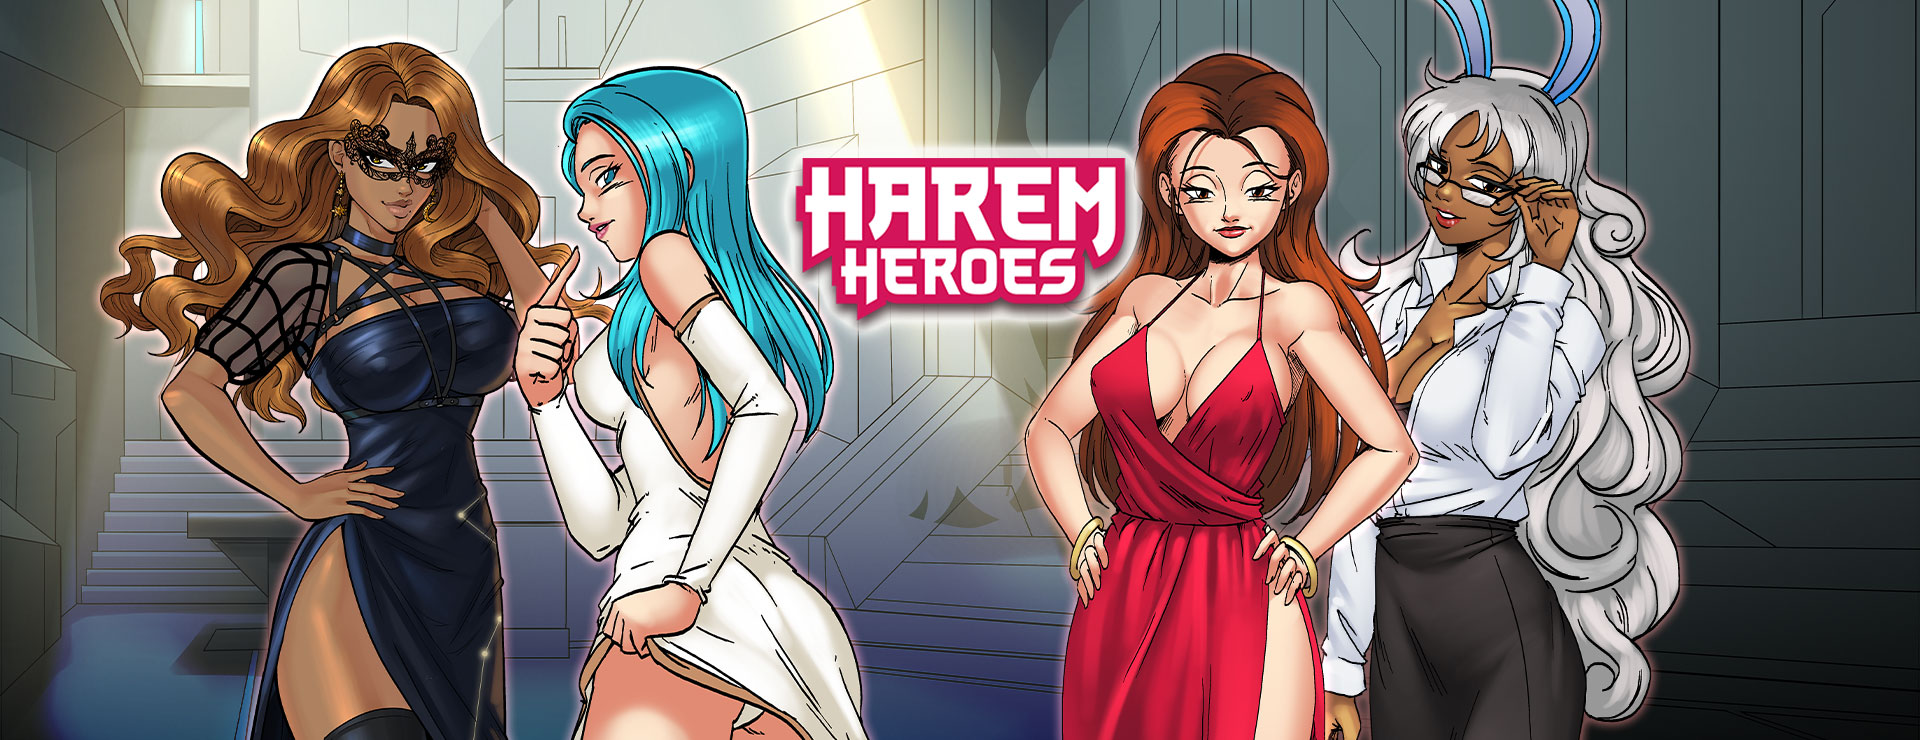 Harem Heroes Game - Aventura Acción Juego